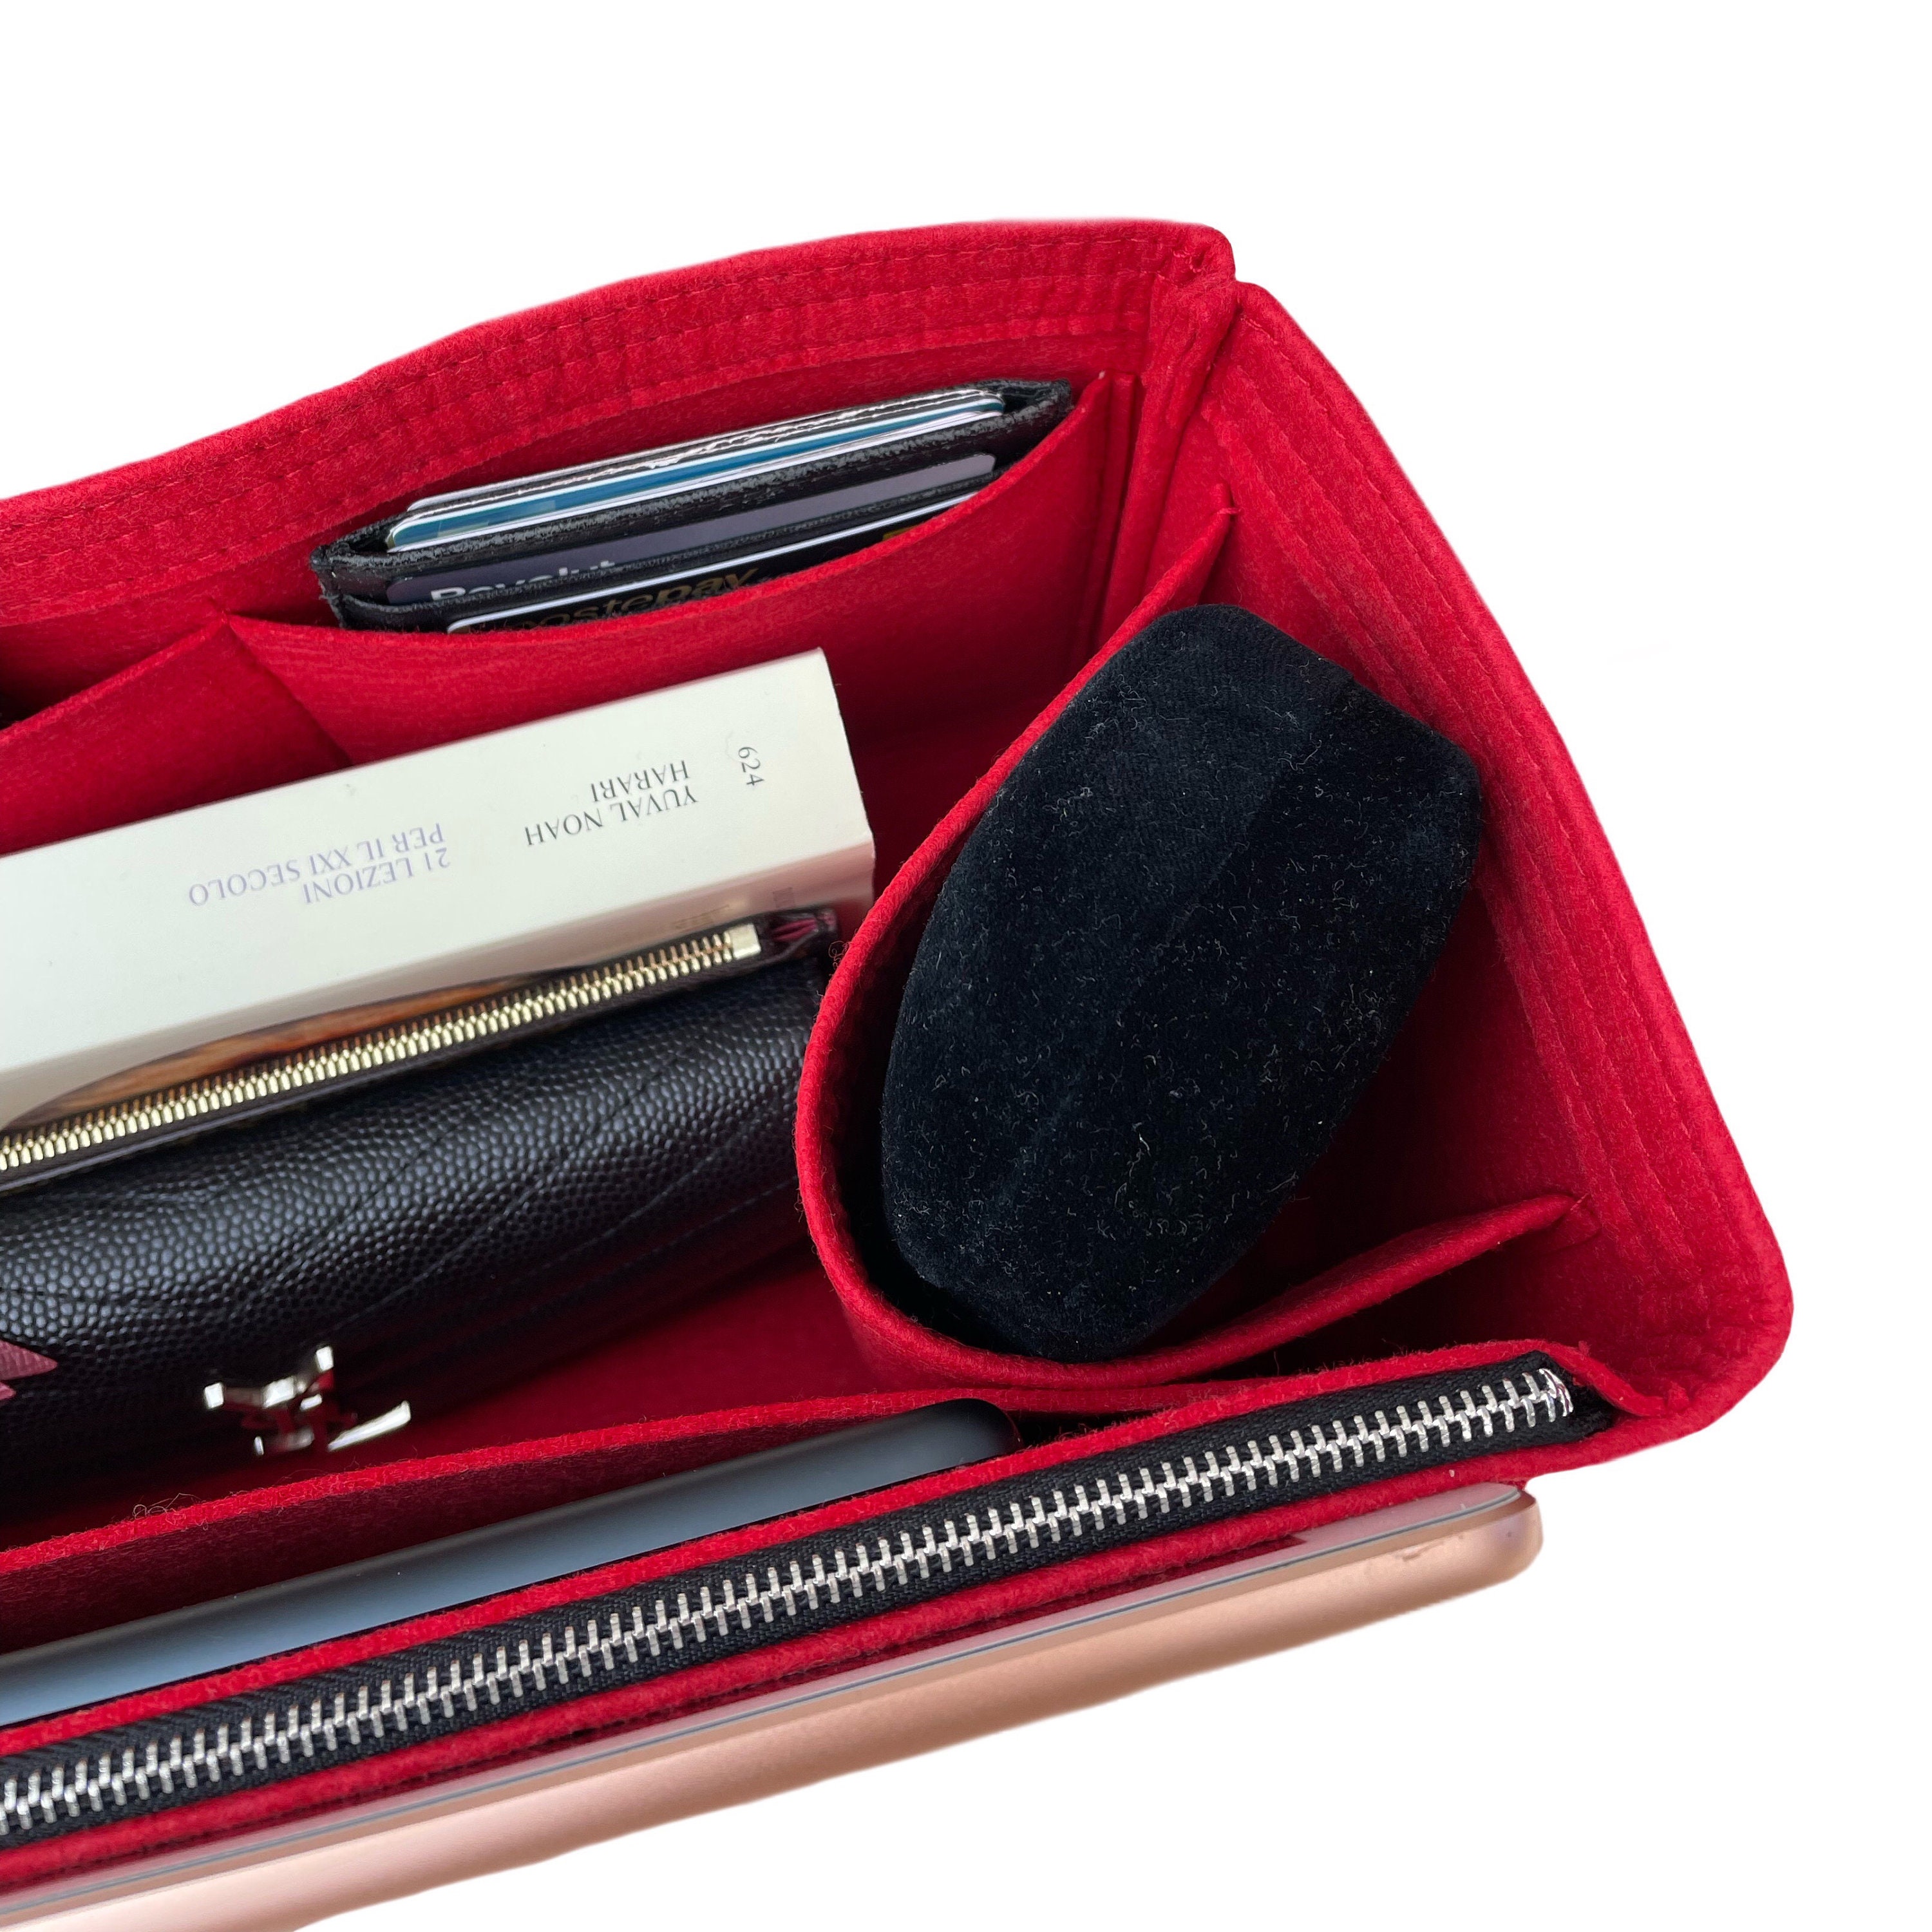 Delmy Shopper Organizer / Delmy Shopper Insert With Zipper / Handbag Storage  / Purse Bag Organizer With Pocket / Accessories Holder 